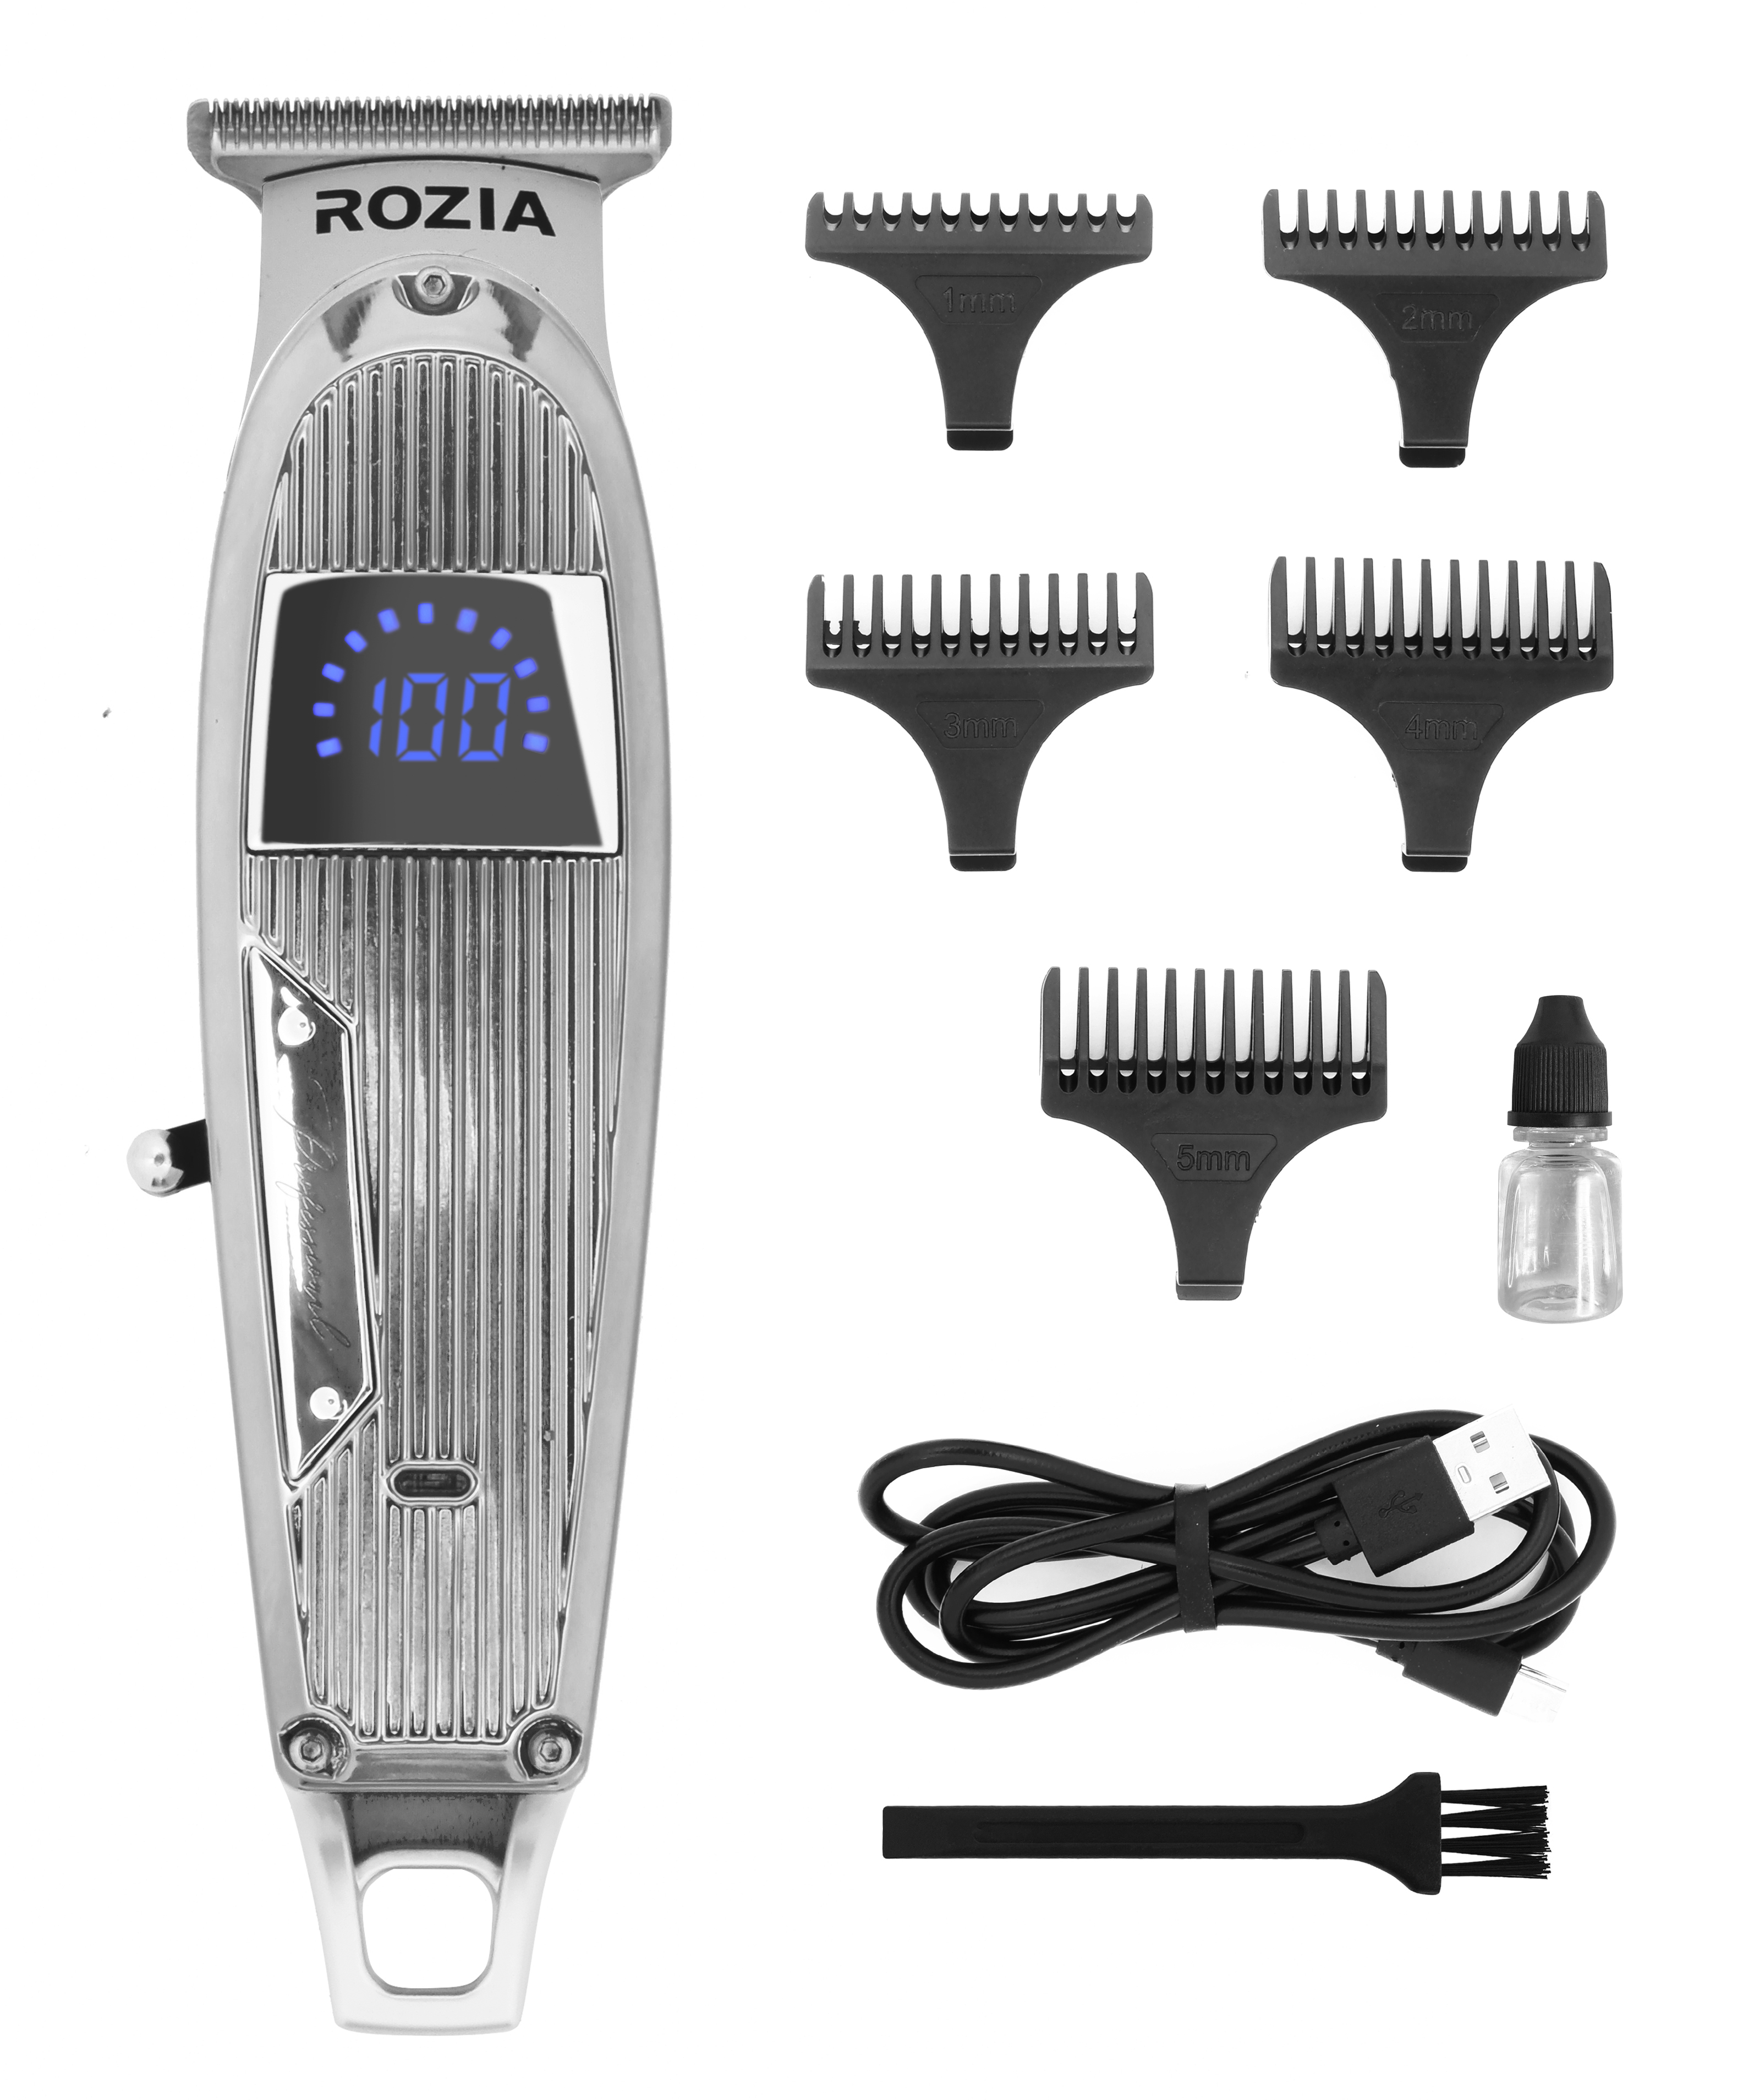 Машинка для стрижки волос Rozia HQ-321 серебристая машинка для стрижки волос rozia hq 208 оранжевая